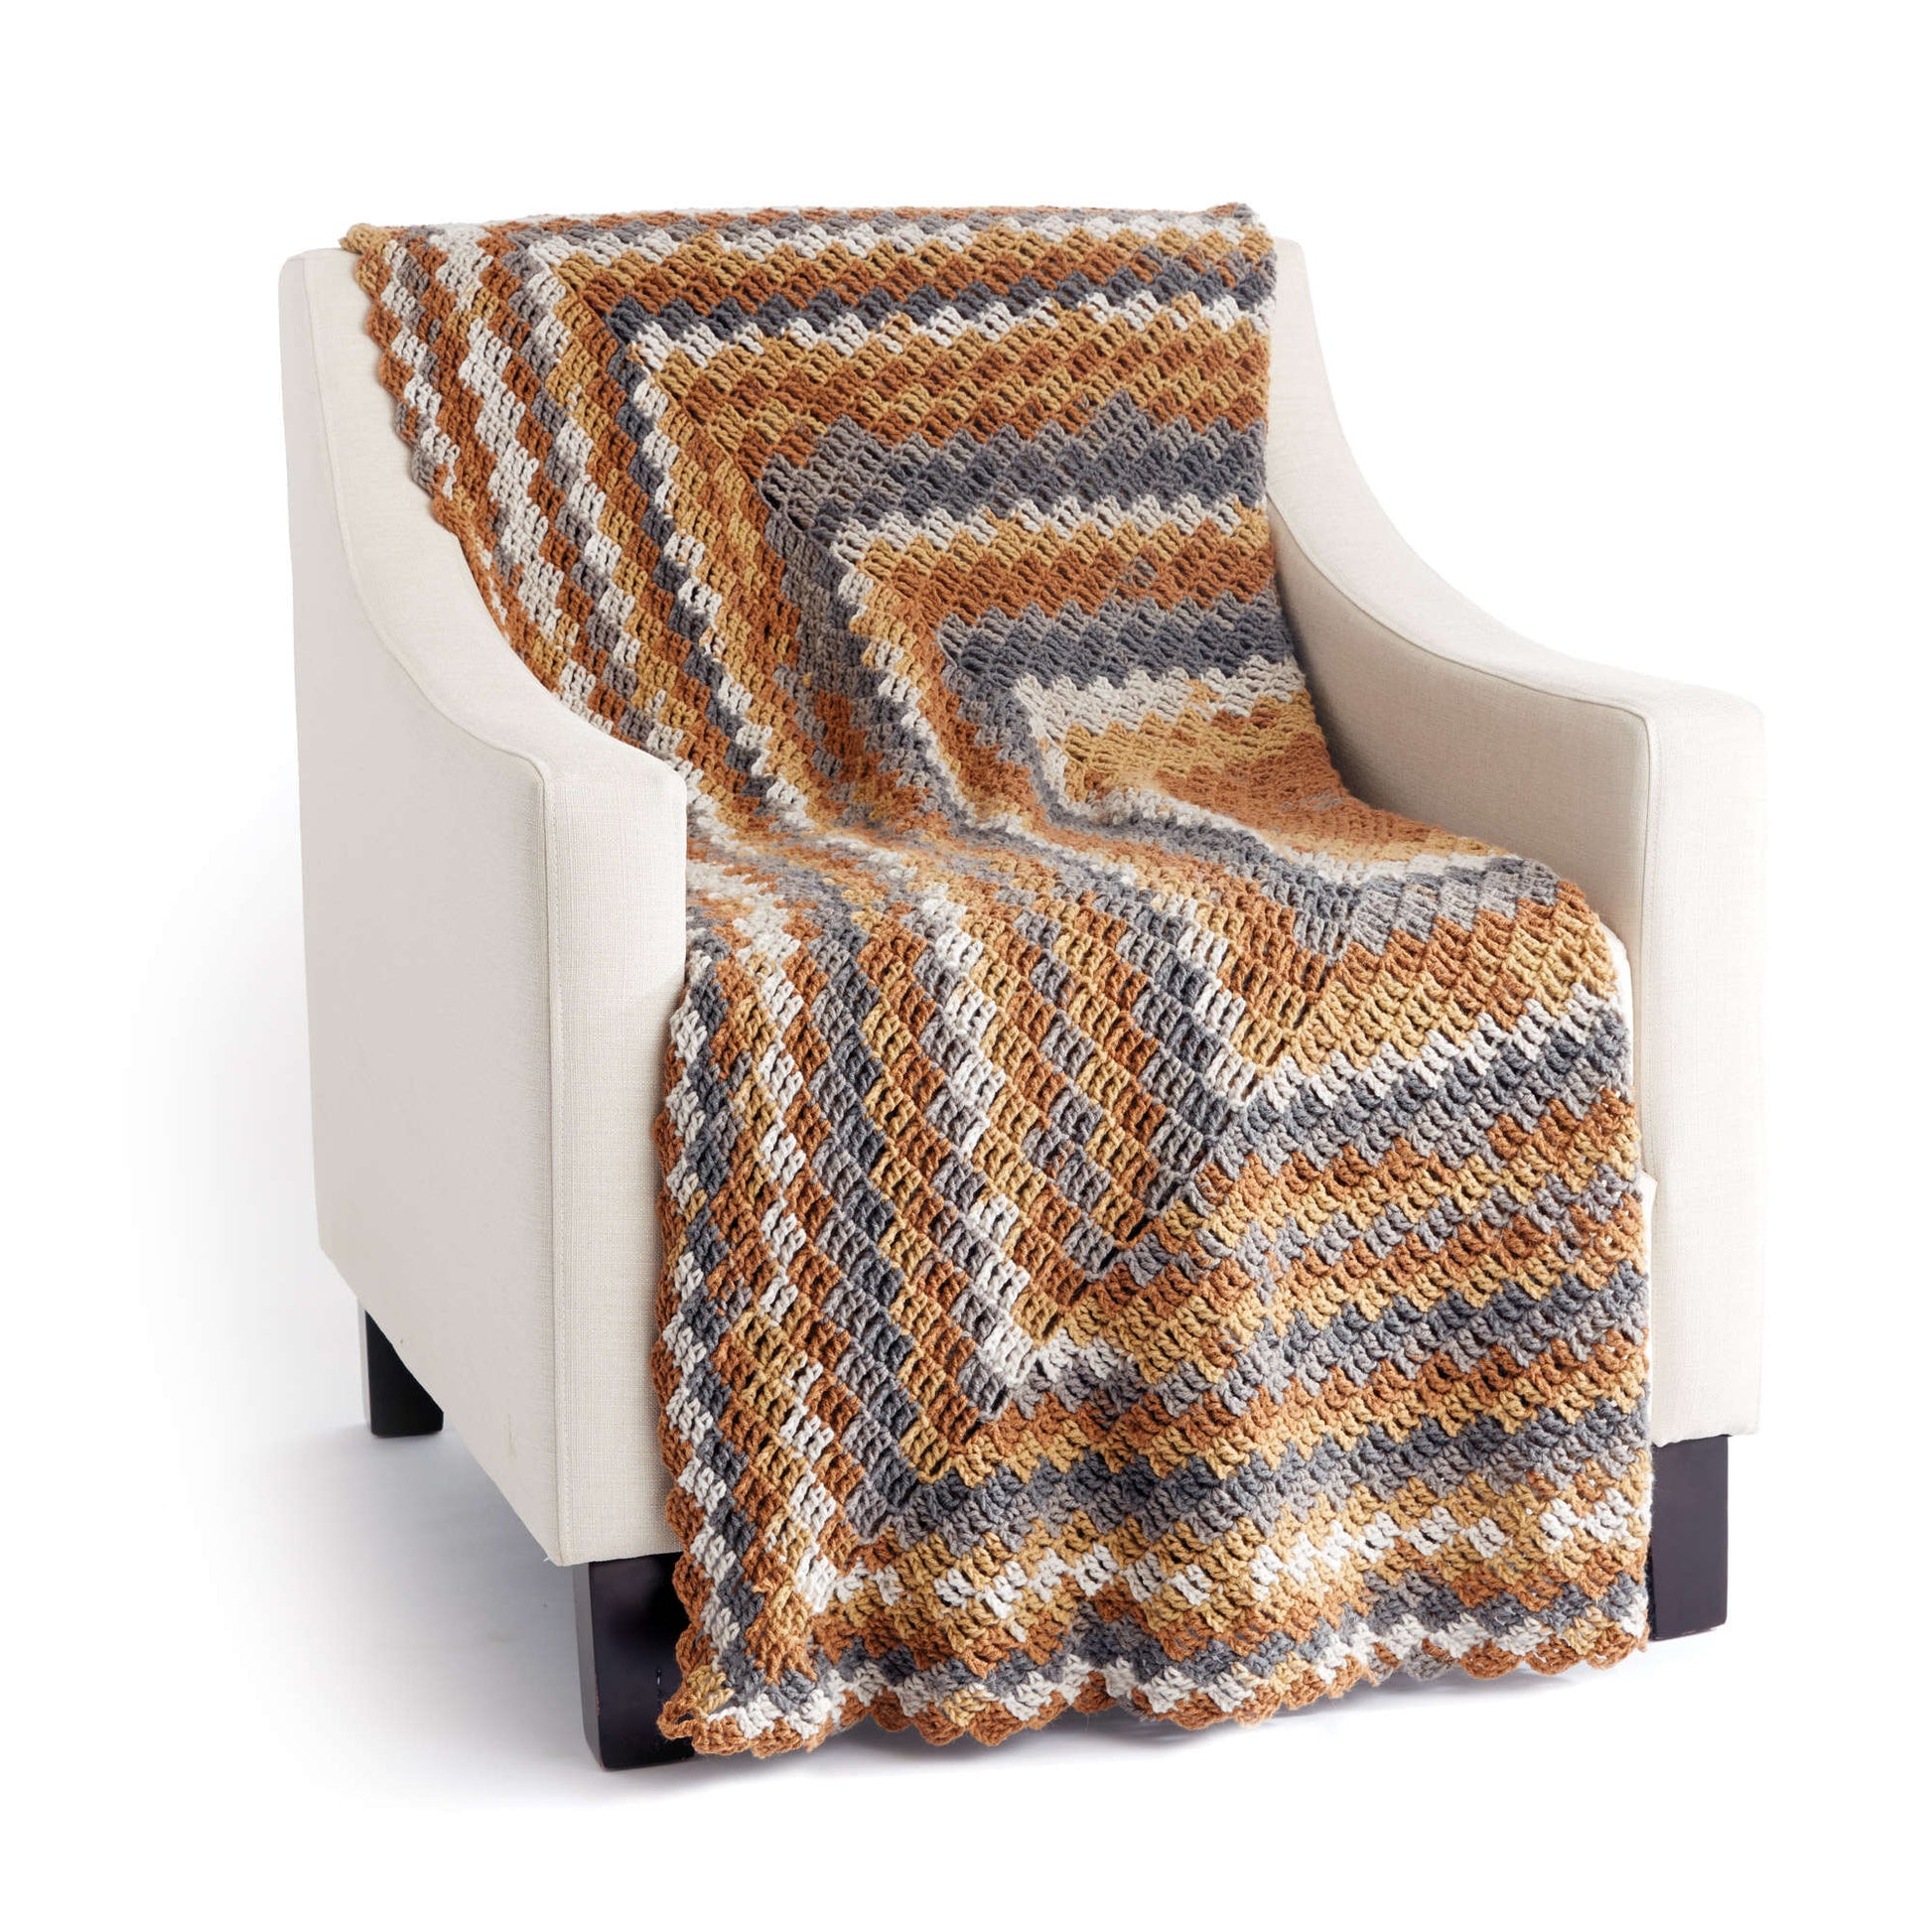 Free Caron Stacking Blocks Crochet Blanket Pattern